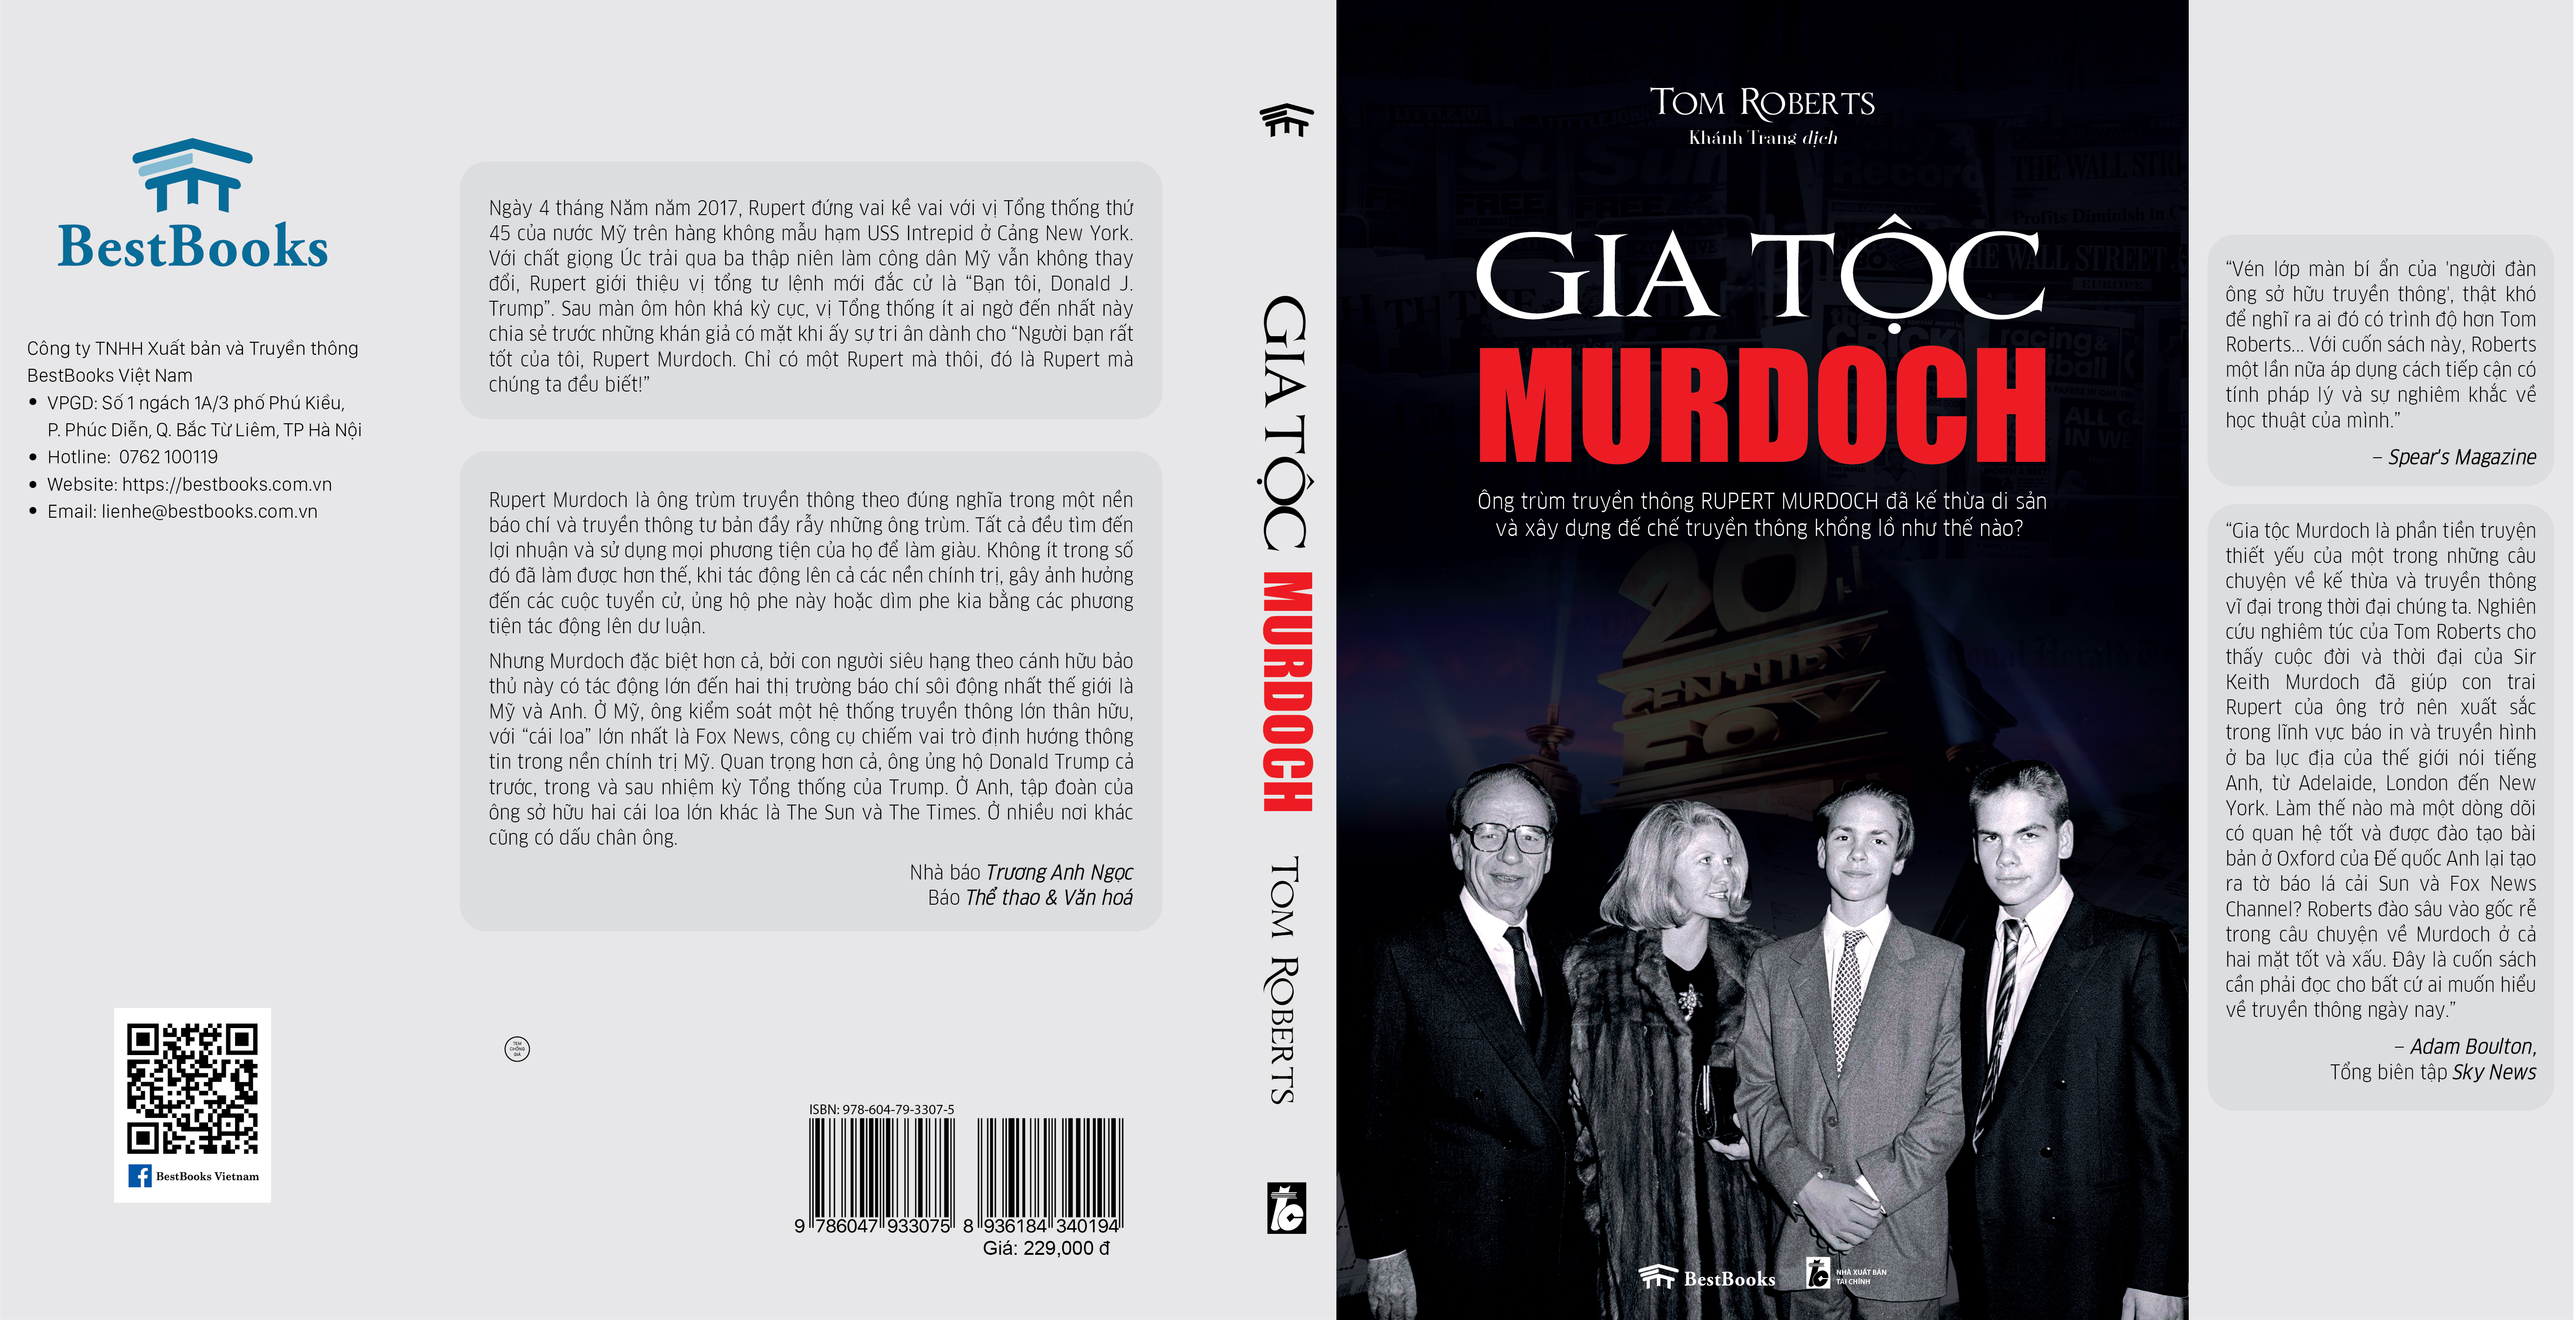 GIA TỘC MURDOCH - Ông trùm truyền thông Rupert Murdoch đã kế thừa di sản và xây dựng đế chế truyền thông khổng lồ như thế nào?